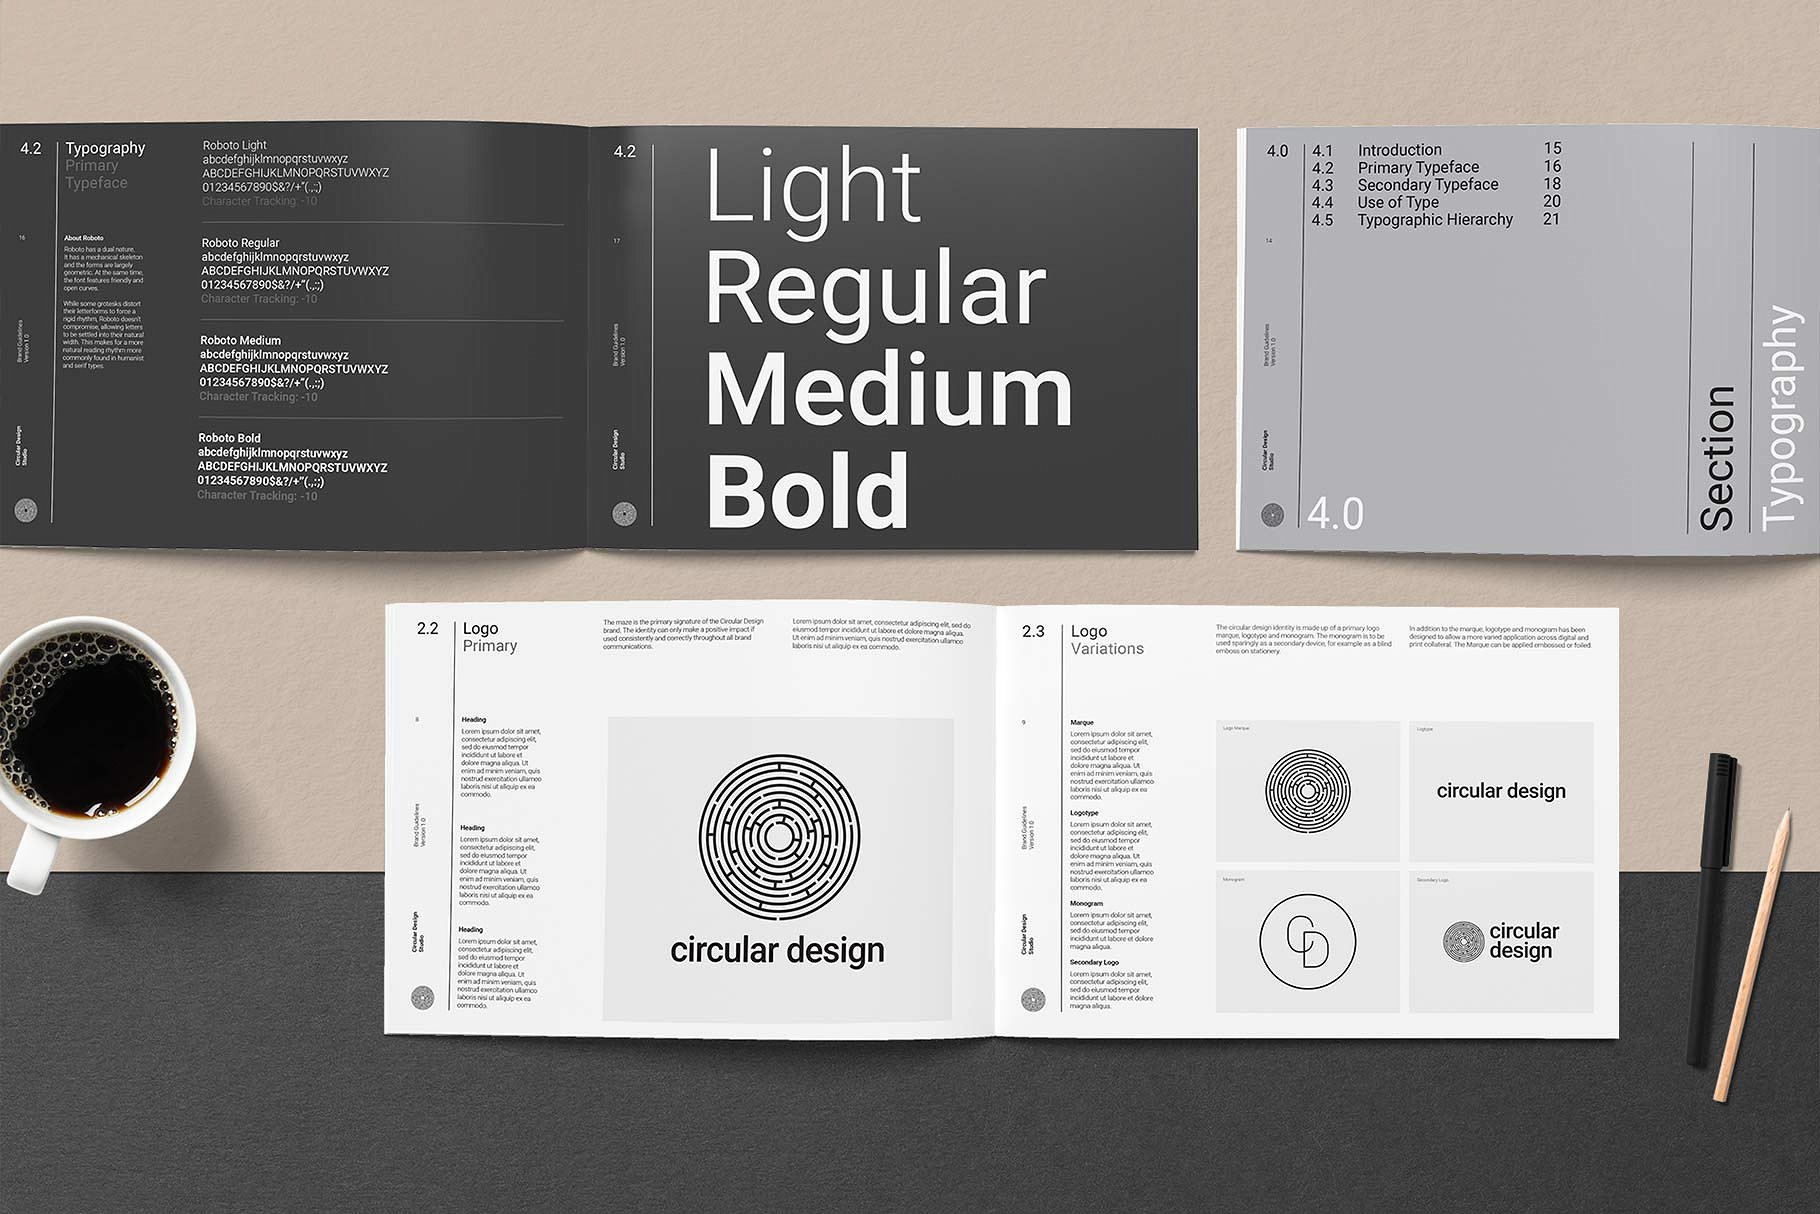 极简主义的品牌规范指南杂志InDesign模板下载 THE MINIMALIST / Bundle Pack [indd]插图(6)